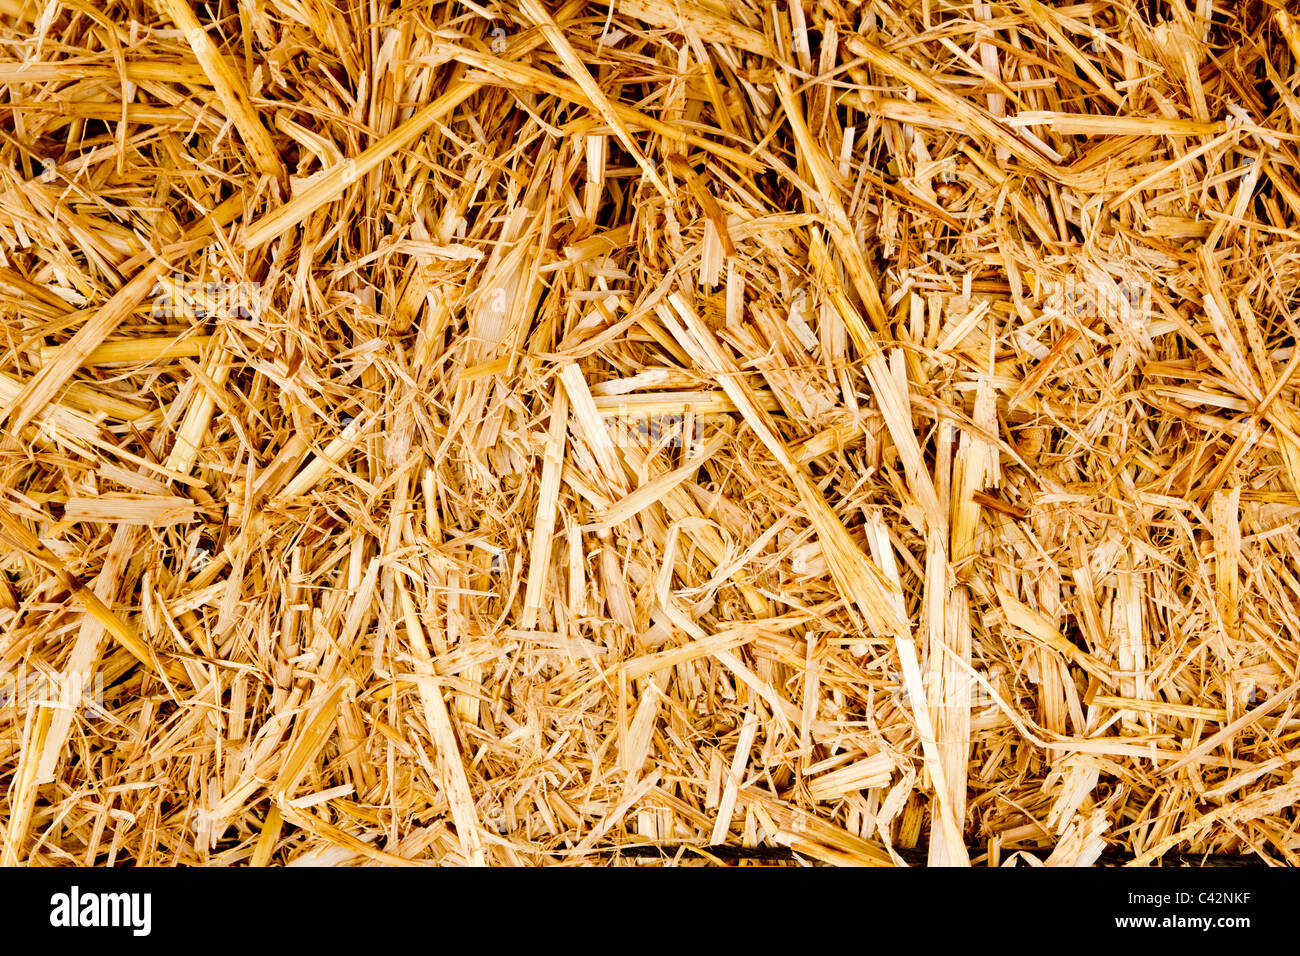 Goldene Ballen Stroh Textur Wiederkäuer tierische Nahrung Hintergrund Stockfoto